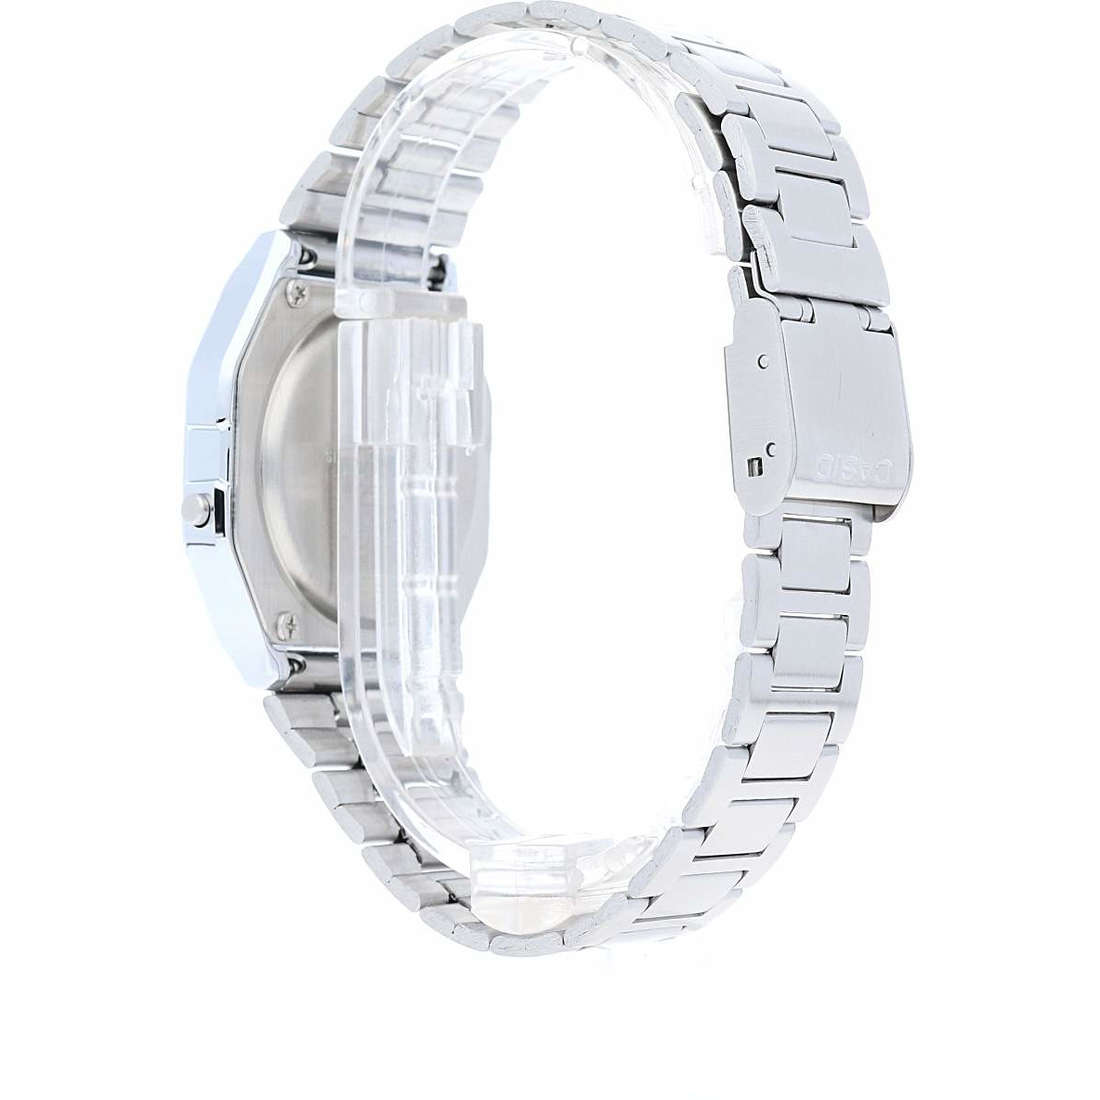 Offres montres femme Casio A158WEA-1EF